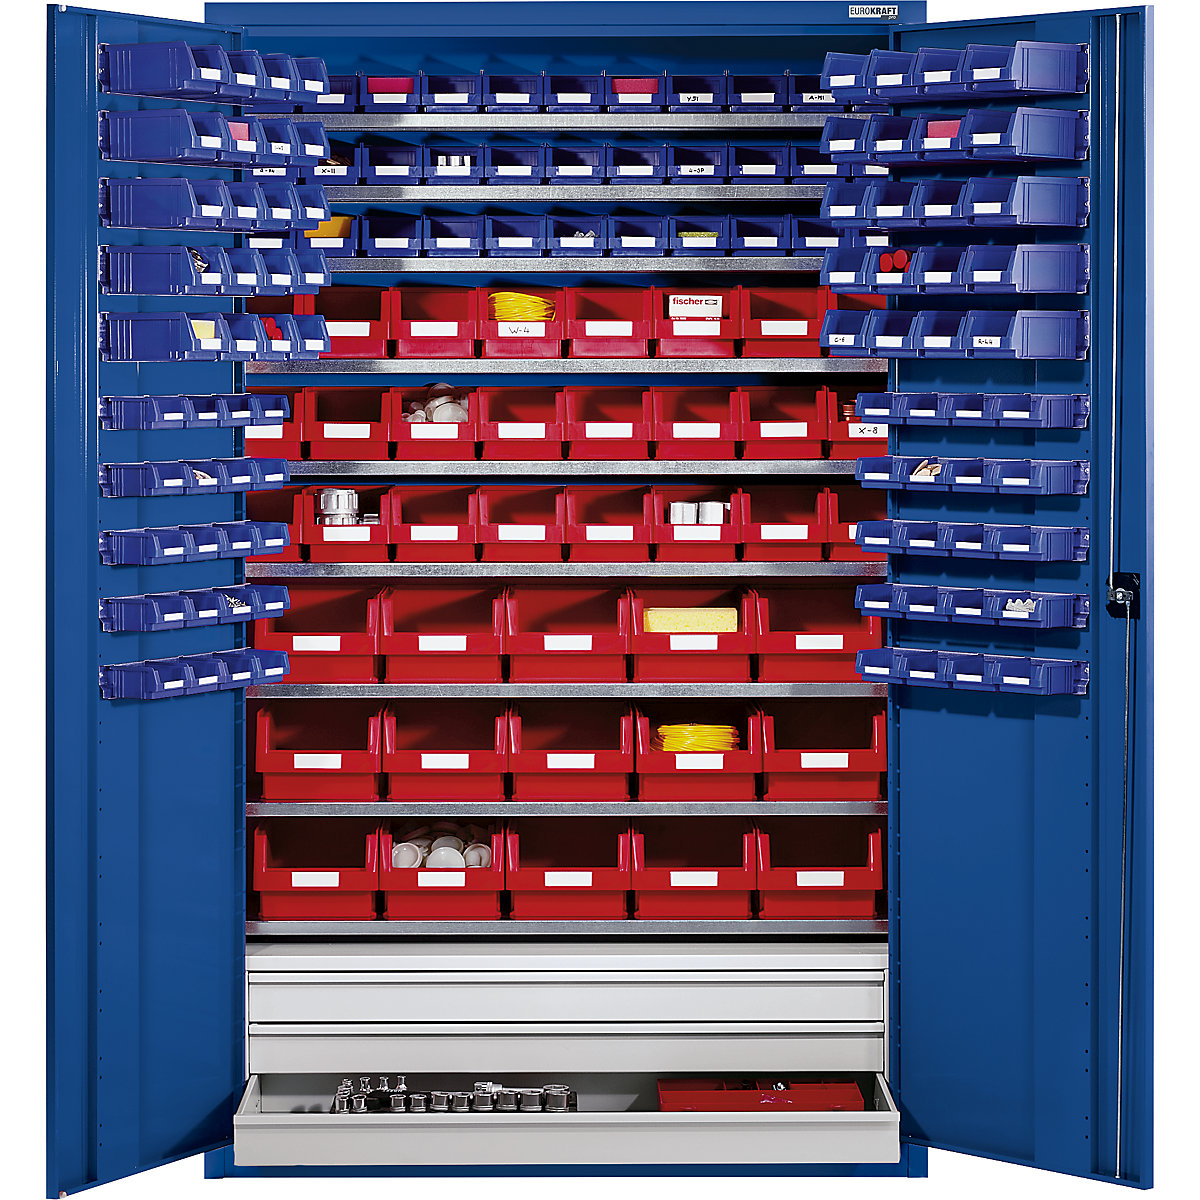 Szafa o dużej pojemności z blachy stalowej – eurokraft pro, z 9 półkami, 152 przejrzyste półki magazynowe i 3 szuflady, korpus i drzwi w kolorze niebieskim gencjanowym-5